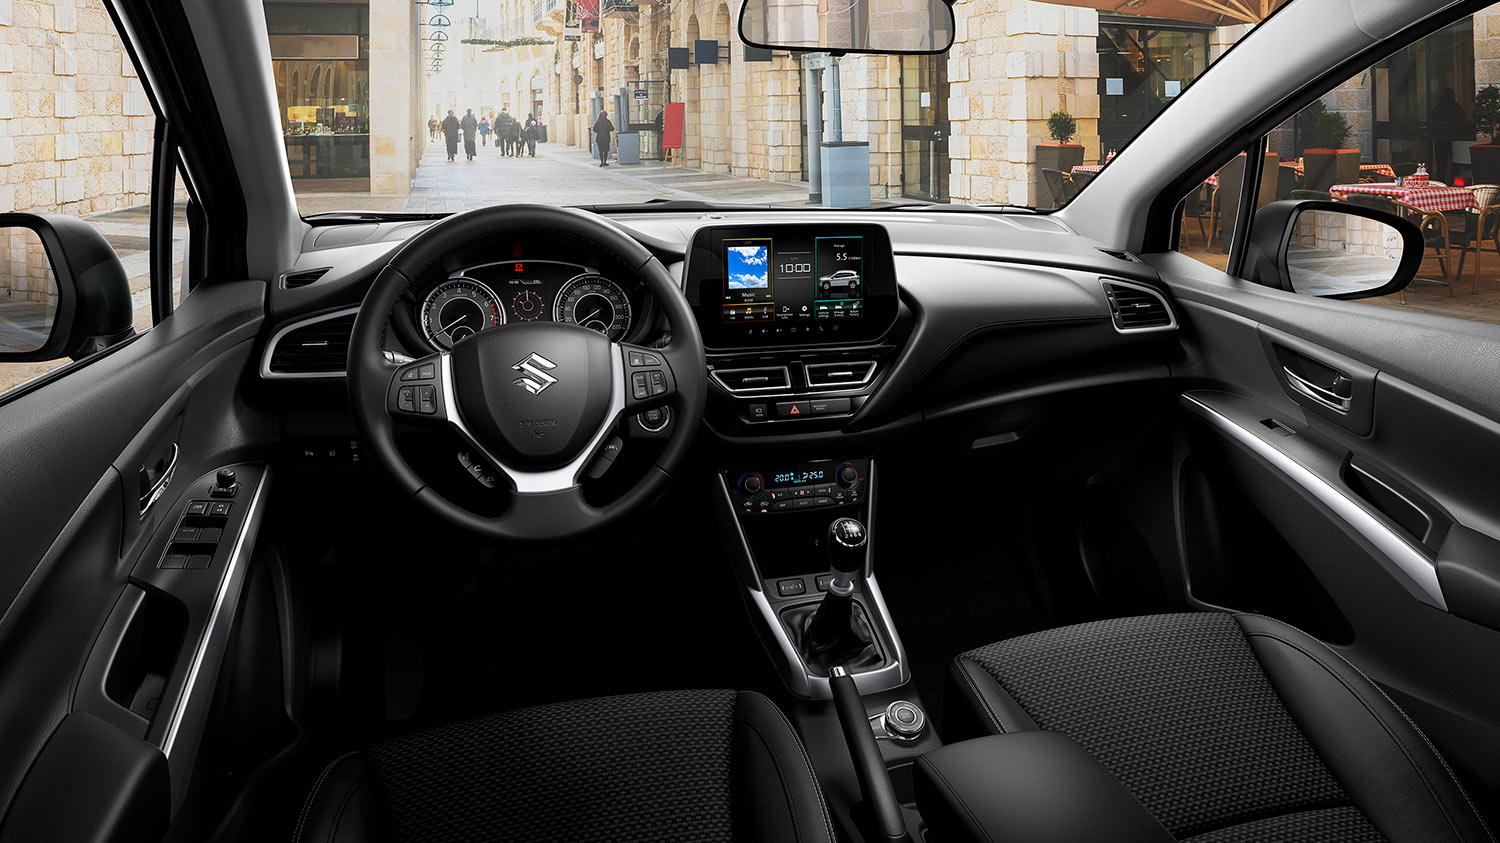 Suzuki S-Cross 2023 interiores con volante multifunción, pantalla flotante y acabados de calidad